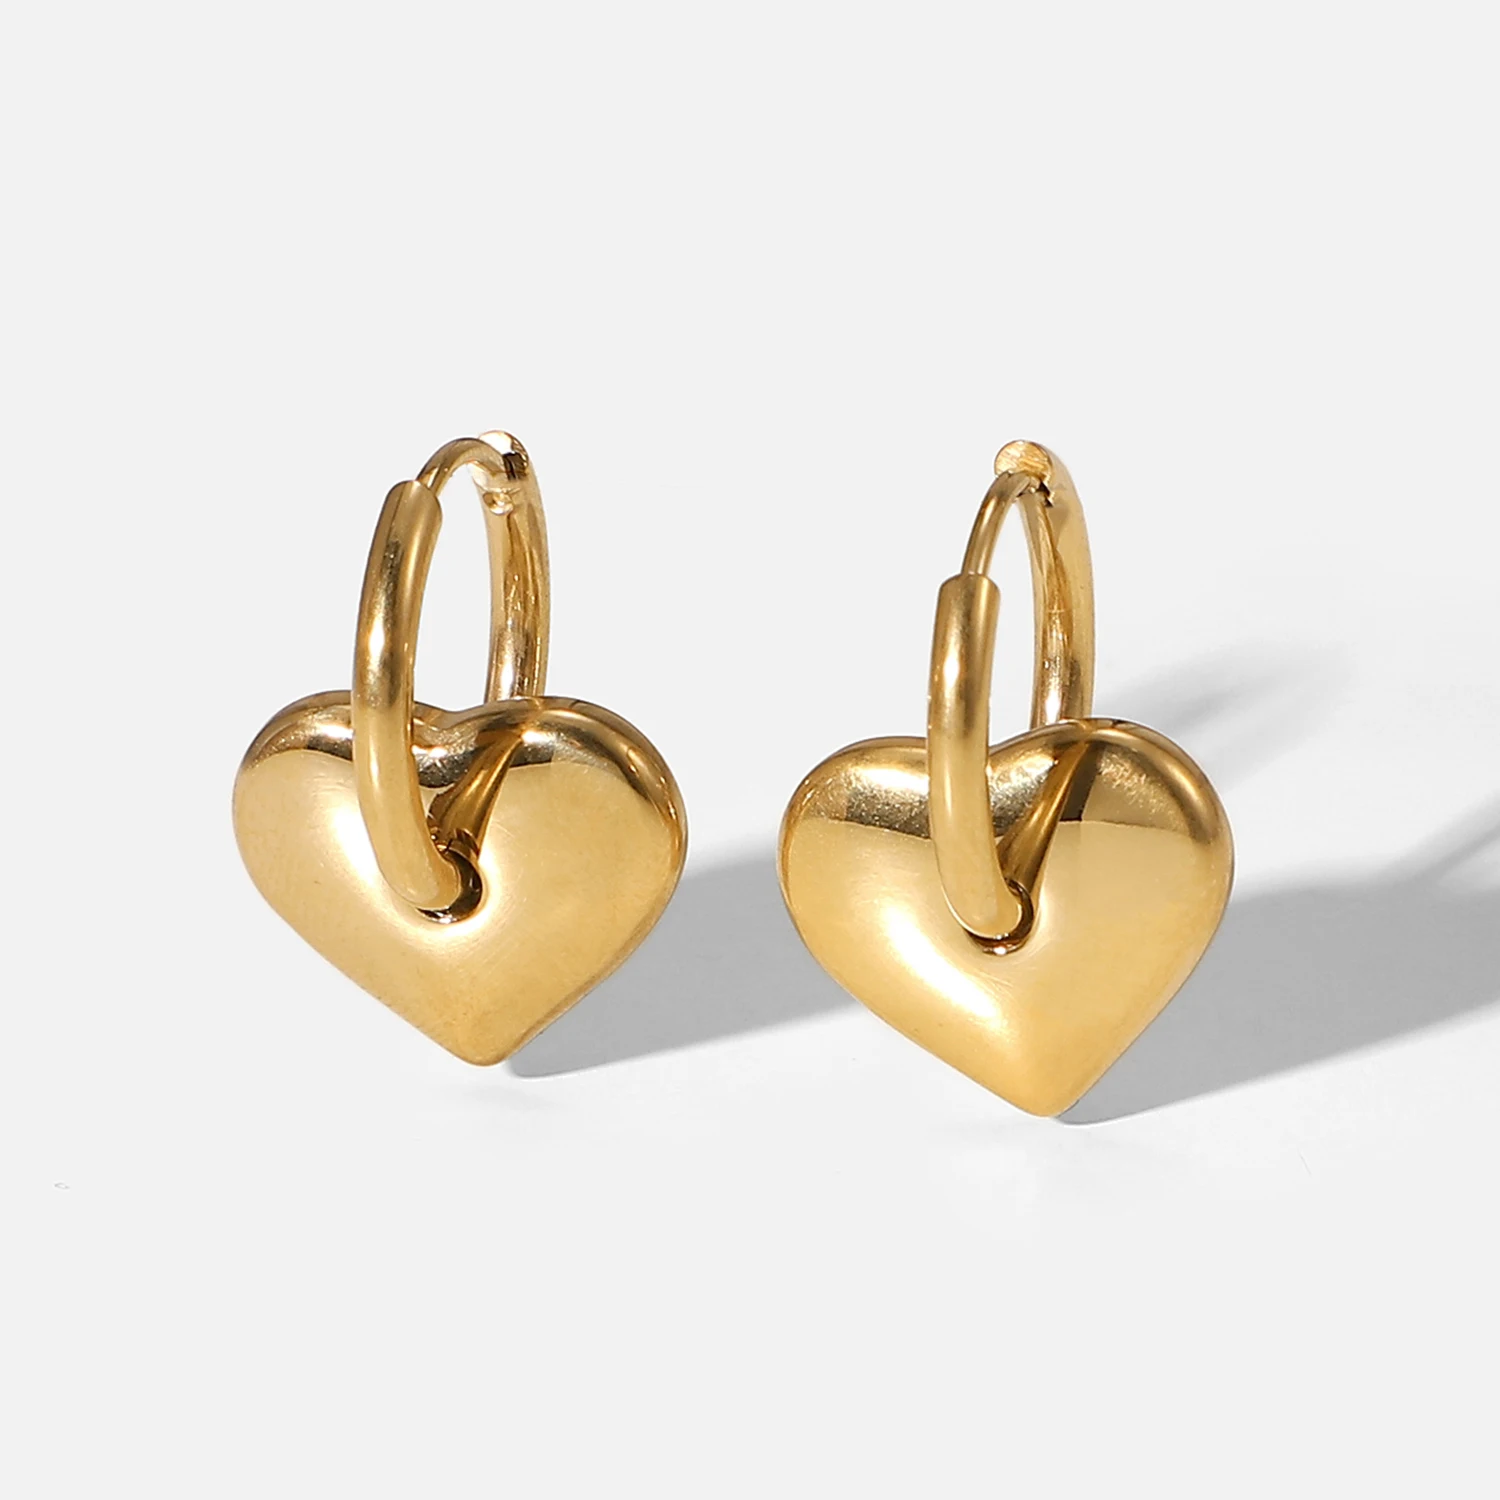 

Minimalism Waterproof Fashion Jewelry Simple 14k Gold Stainless Steel Heart Shaped Hoop Earrings for Women